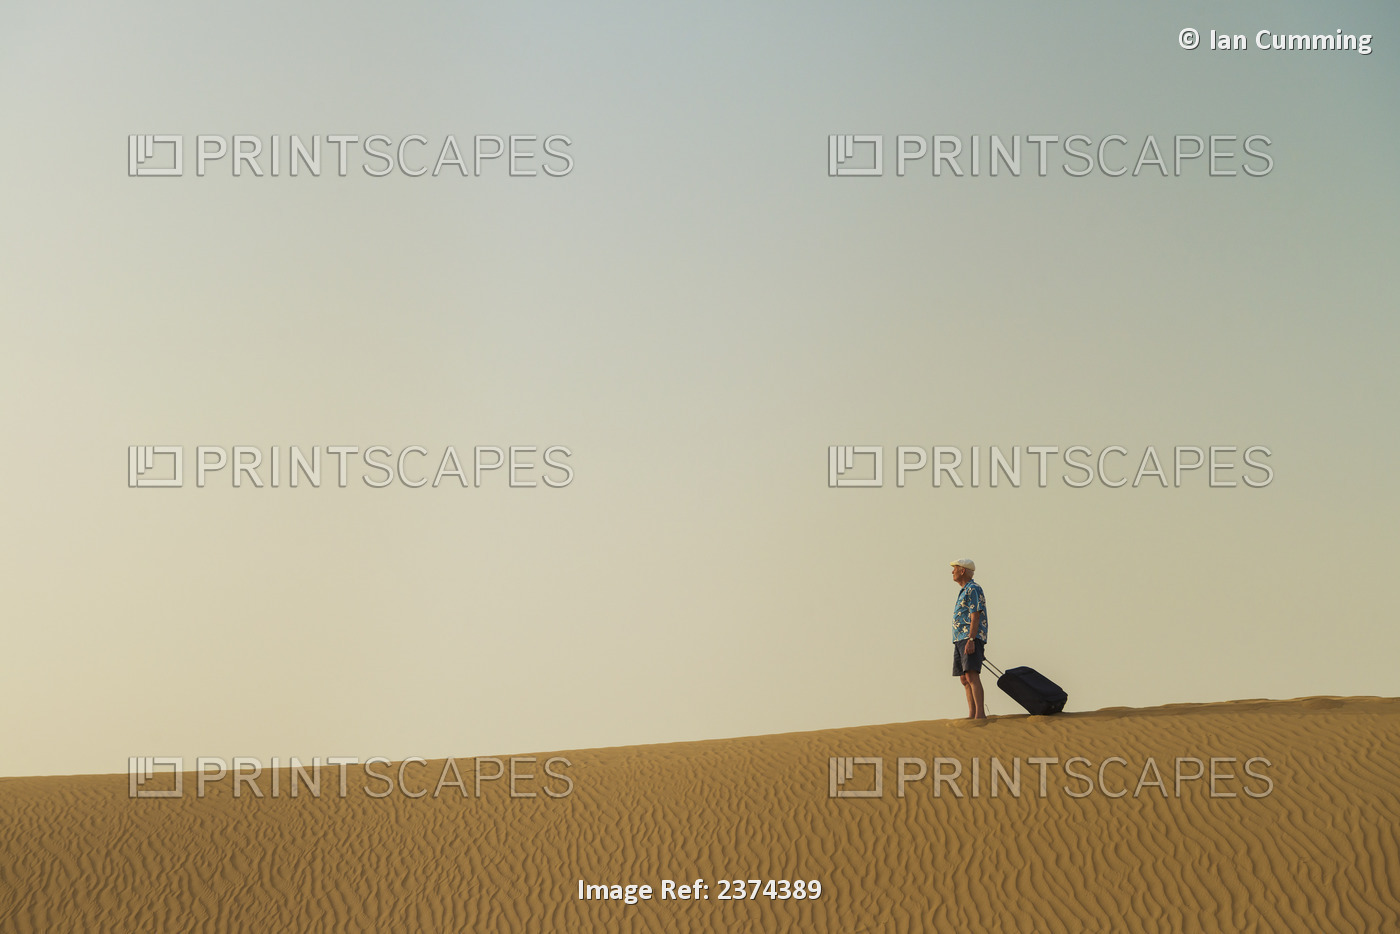 Barefoot Man With Suitcase On Sand Dune; Dubai, United Arab Emirates